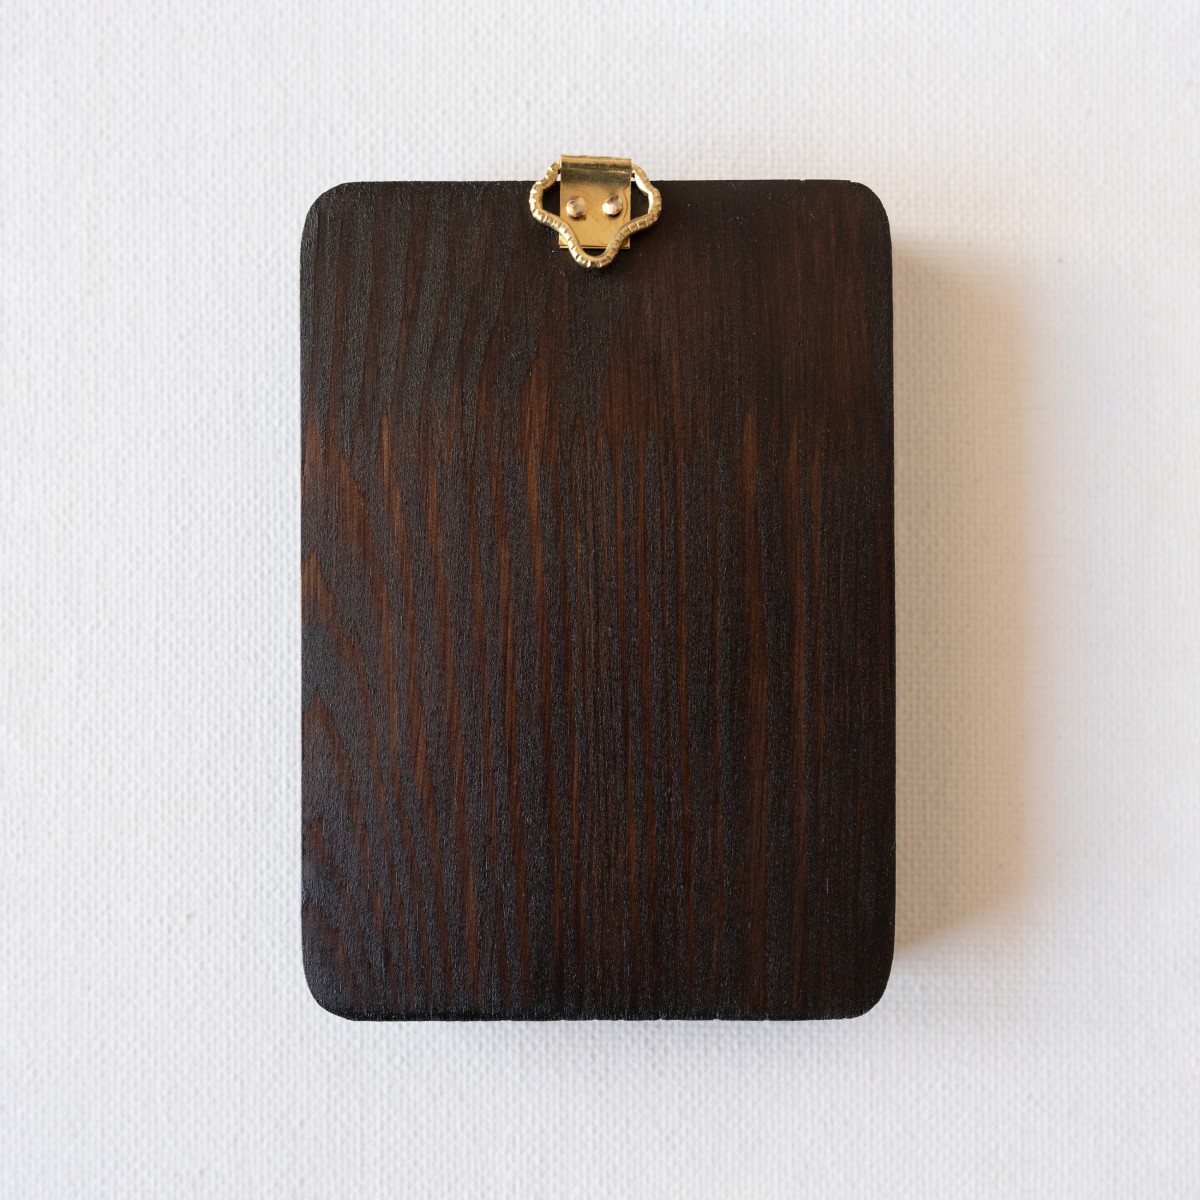 Icoană pe lemn "Sf. Gheorghe purtătorul de biruință", miniatură, 7x10 cm